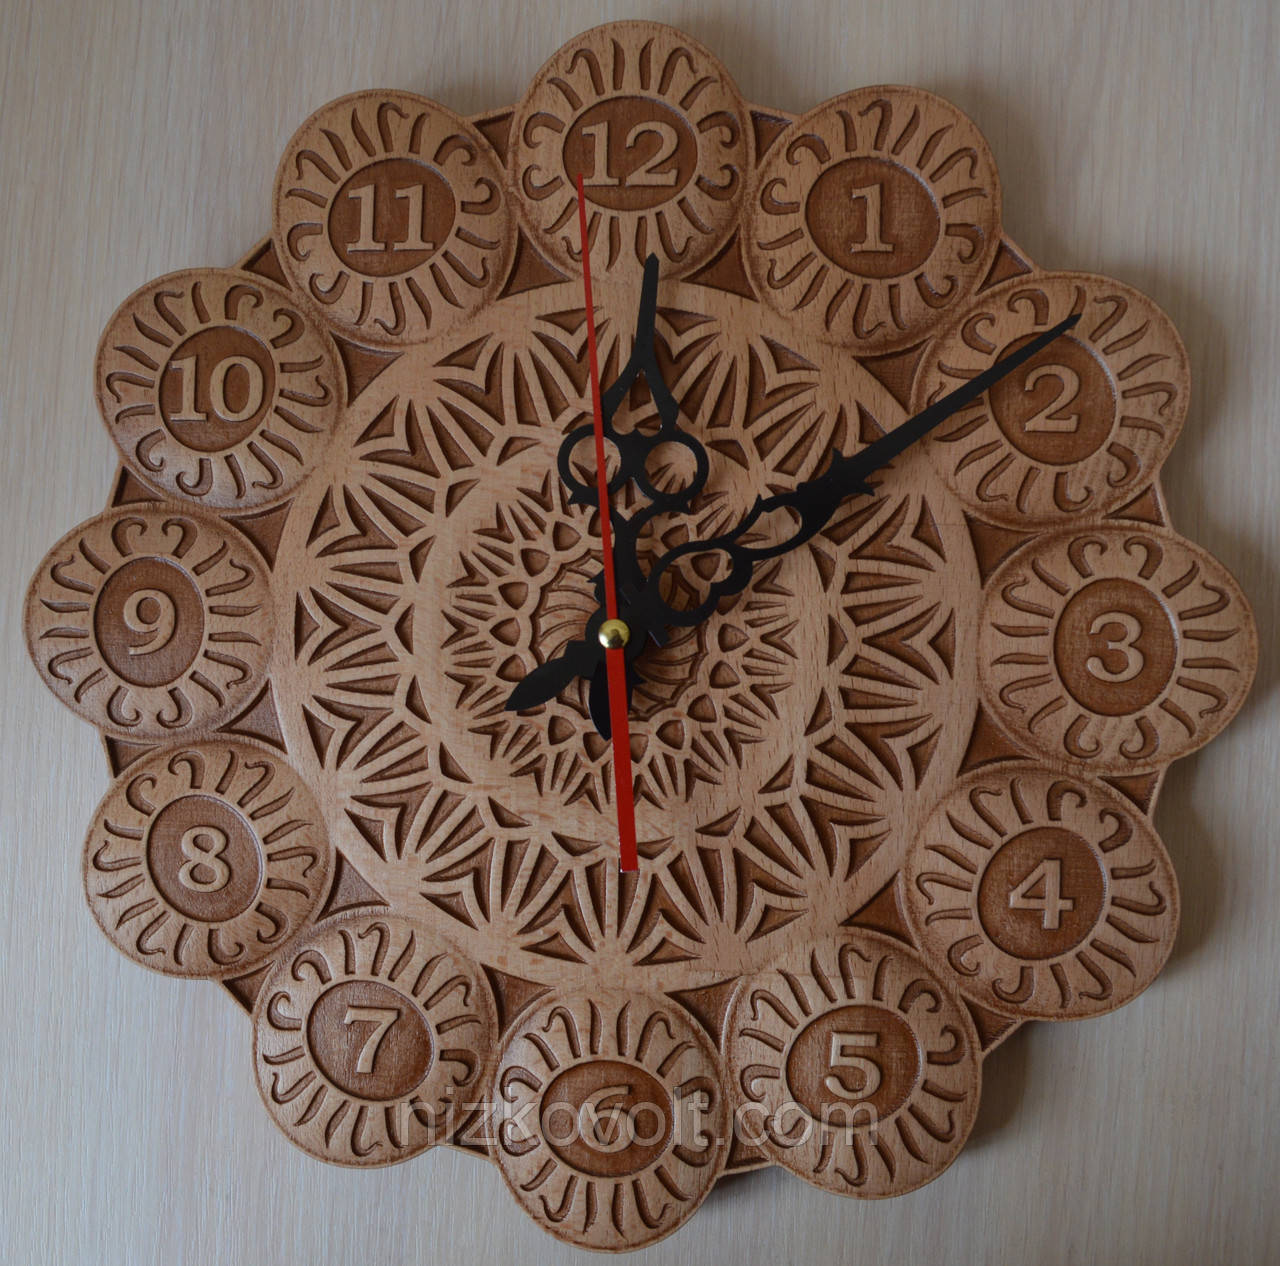 Різьблений годинник з дерева "Квітка" - оригінальний подарунок, фото 1